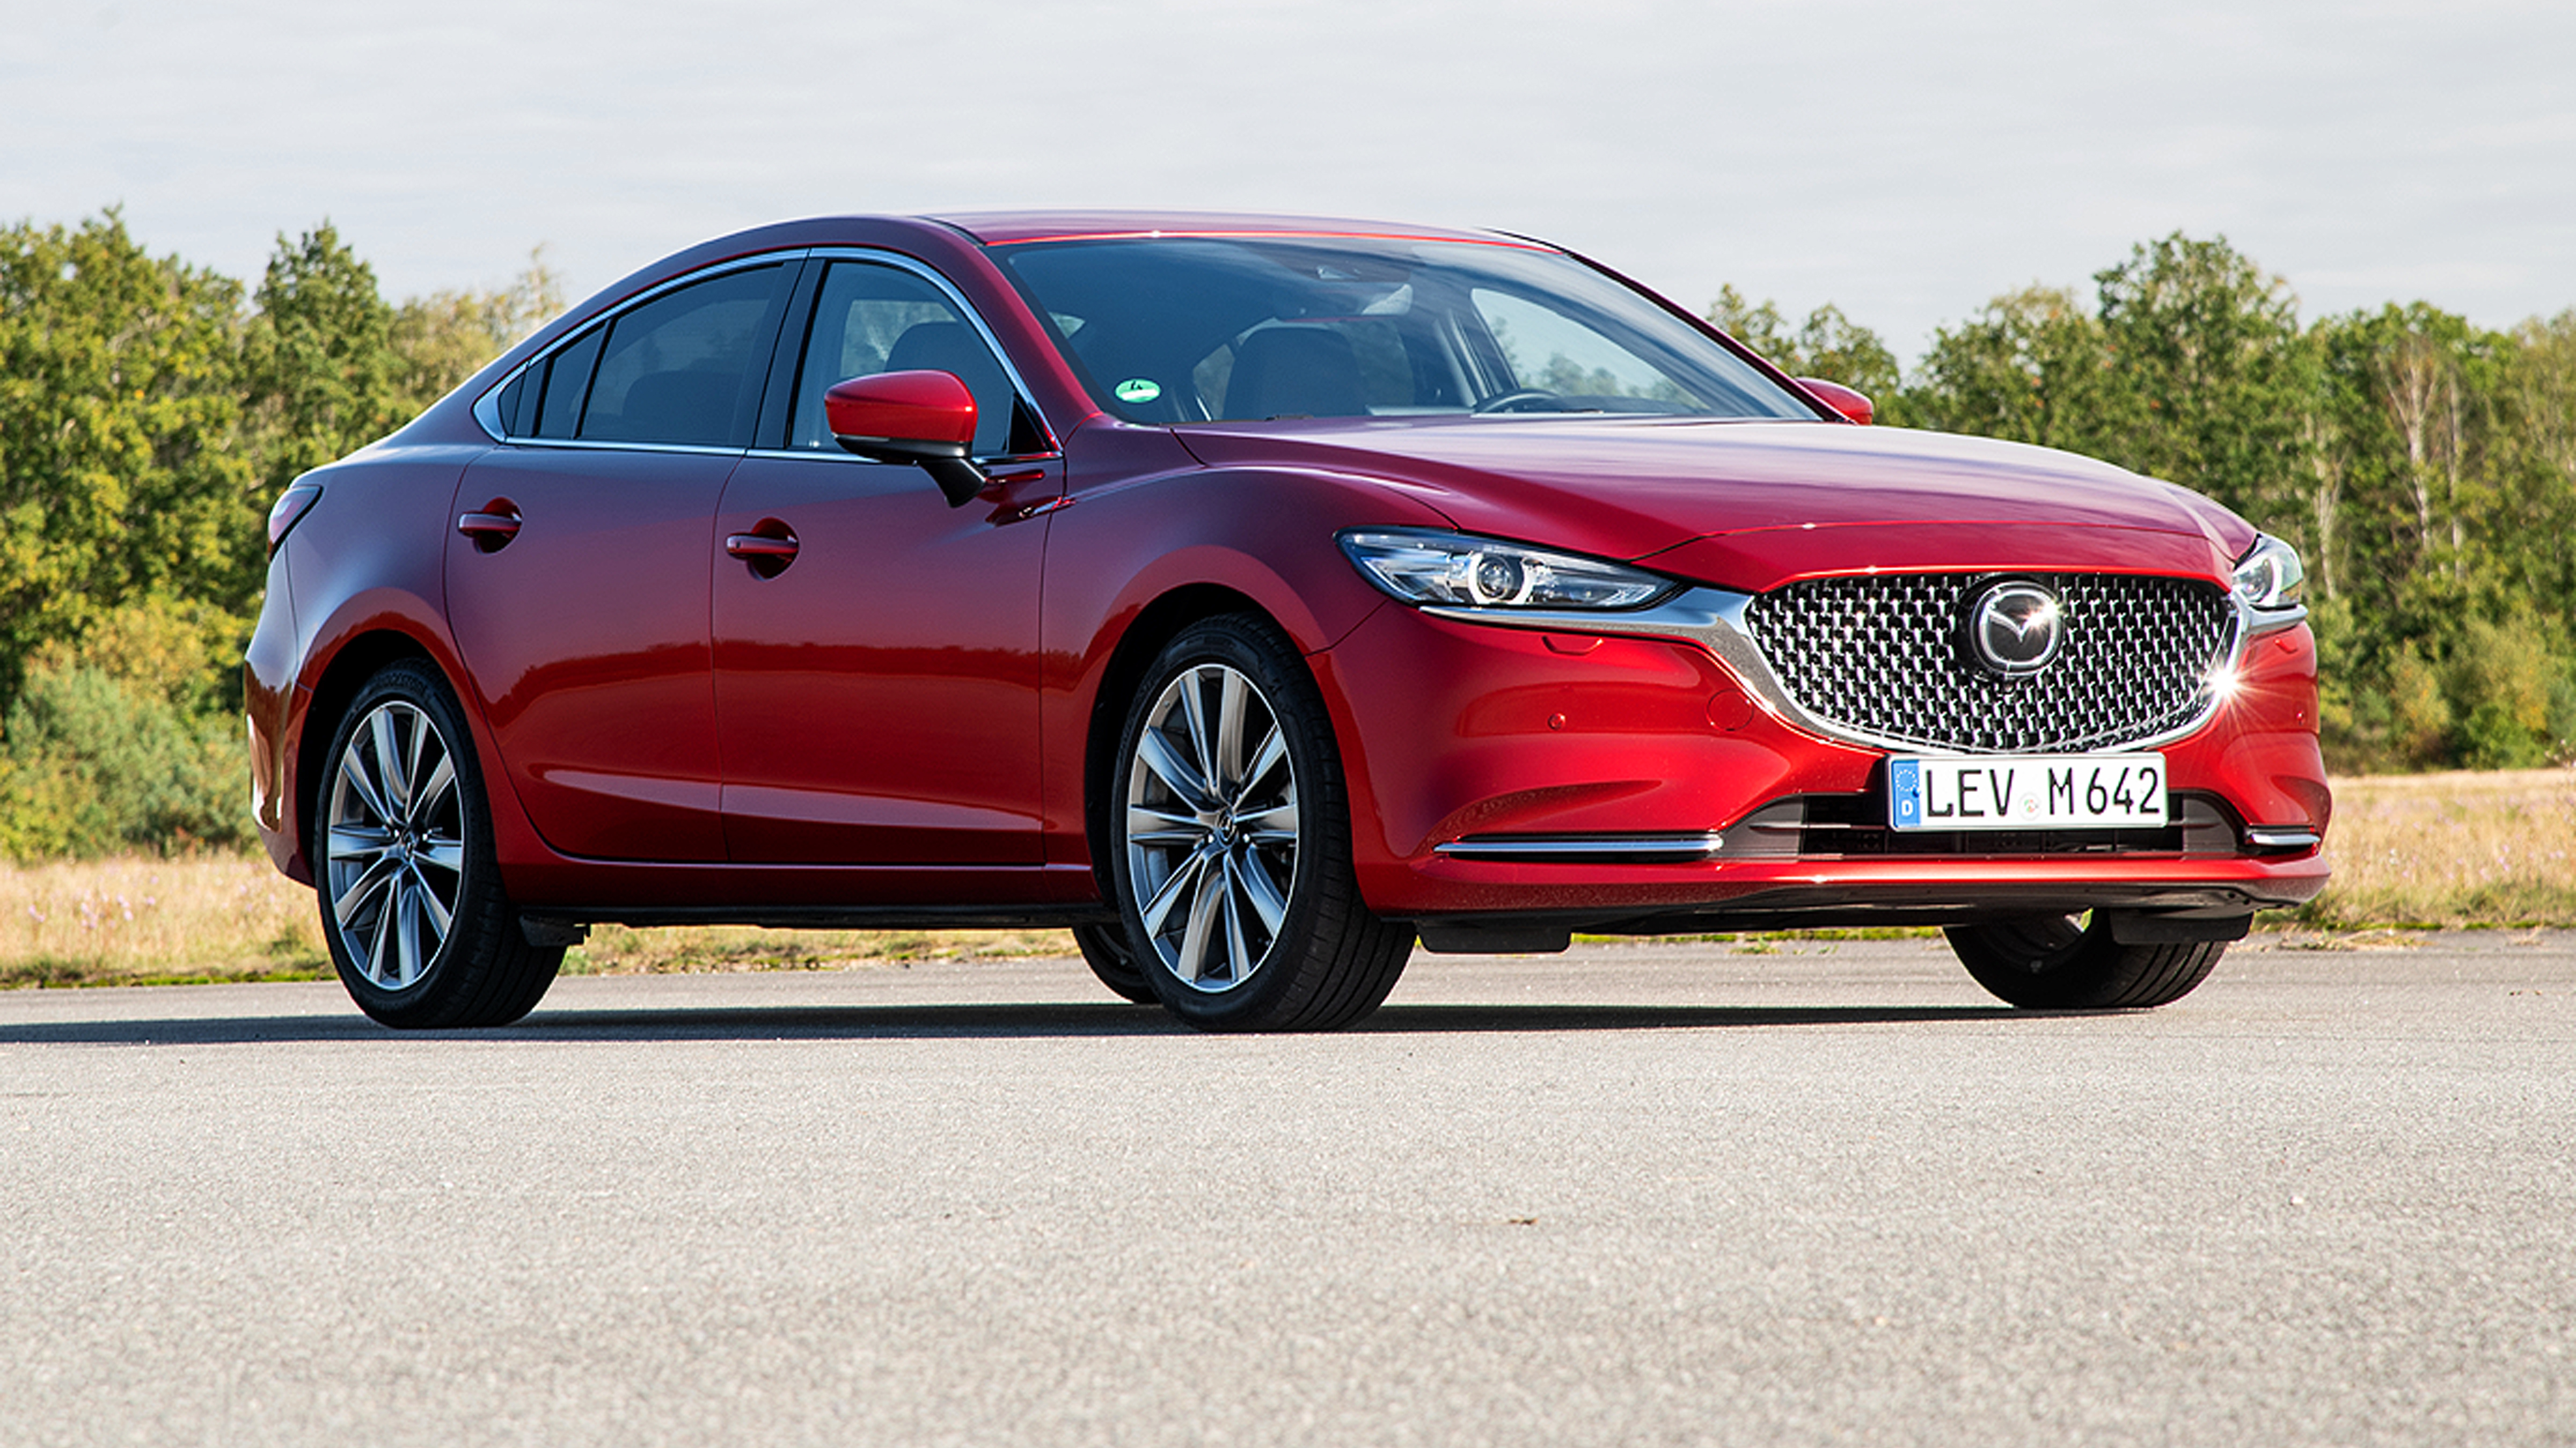 Mazda6: Technische Daten, Preise, Bilder und Video (2013) @